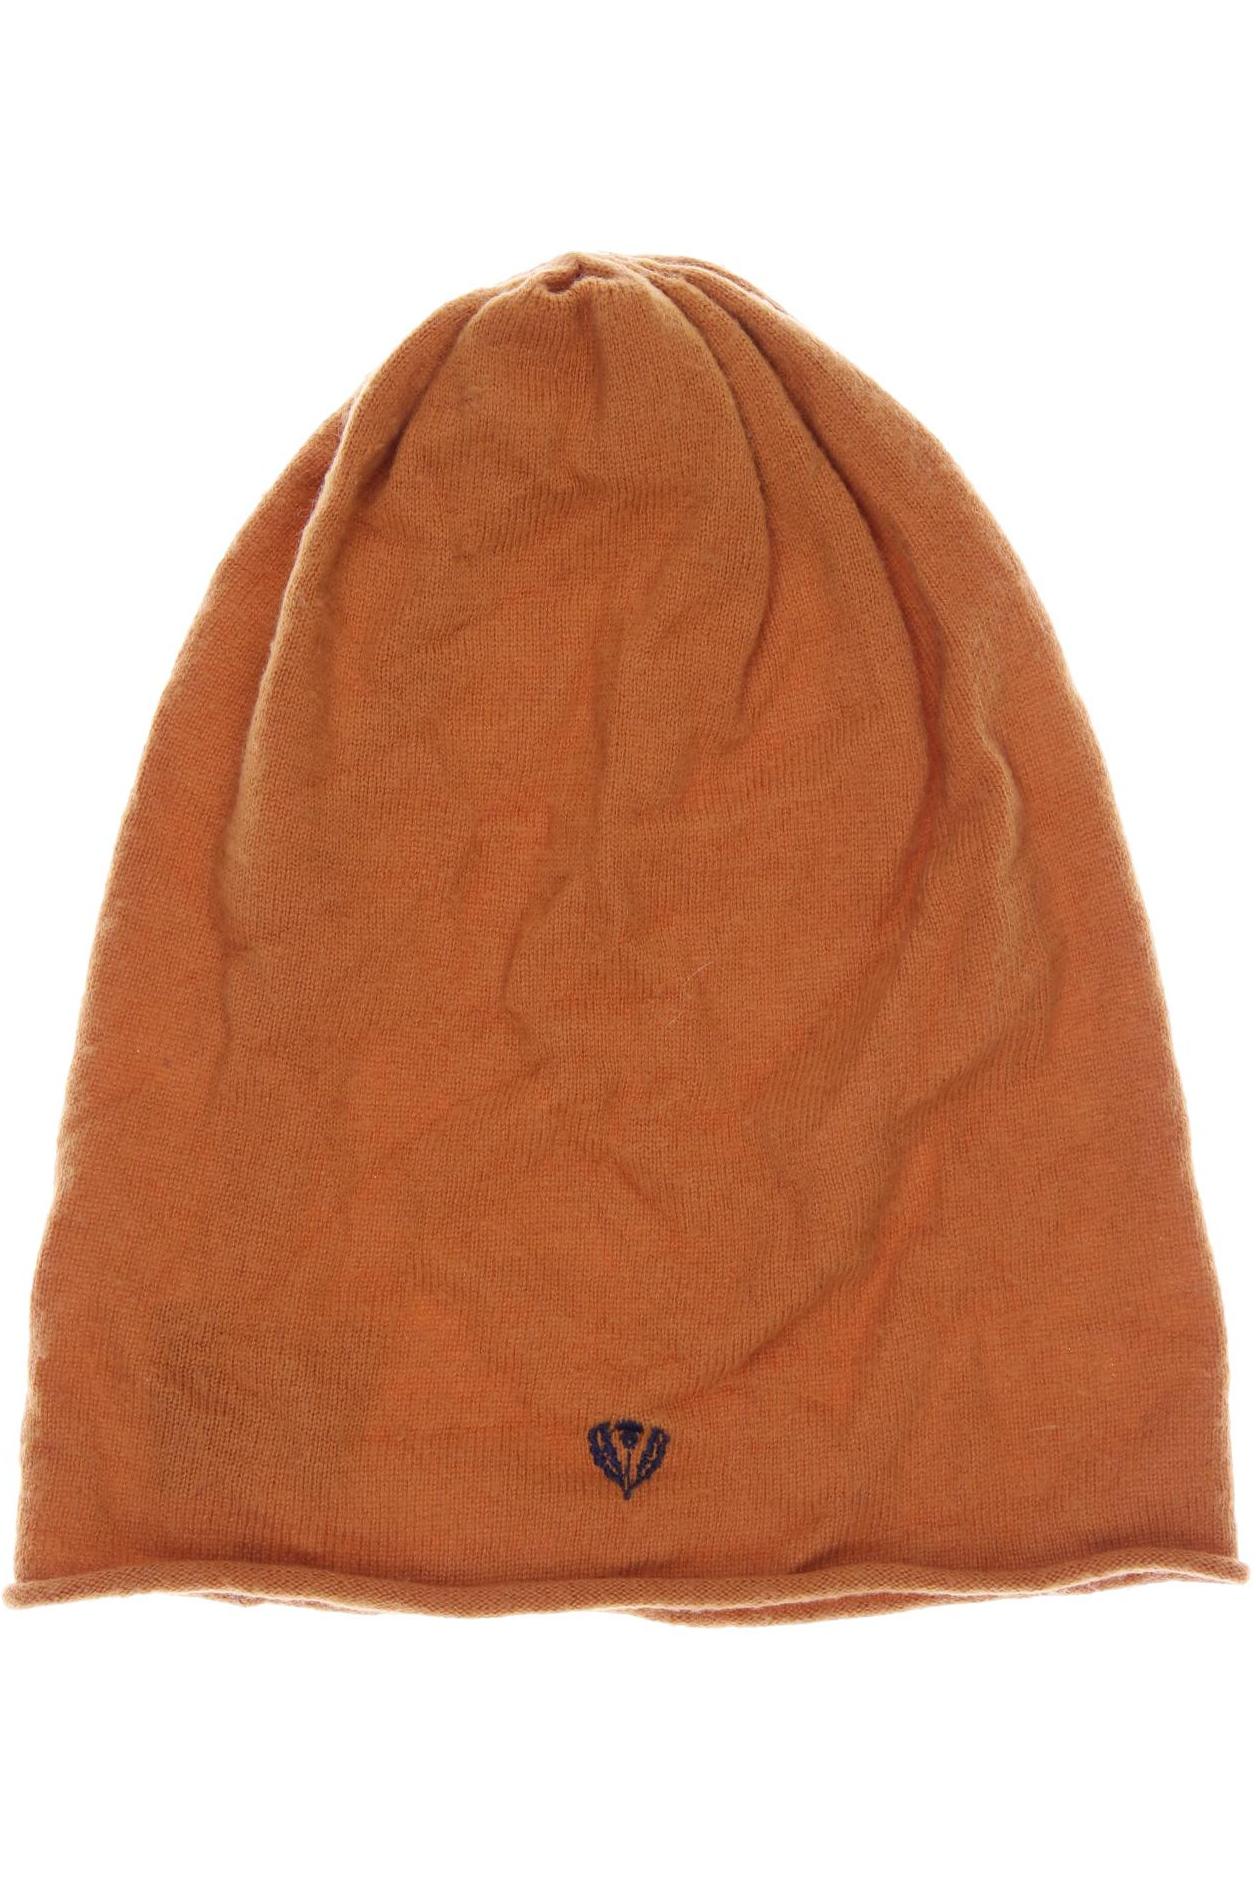 FRAAS Damen Hut/Mütze, orange von FRAAS